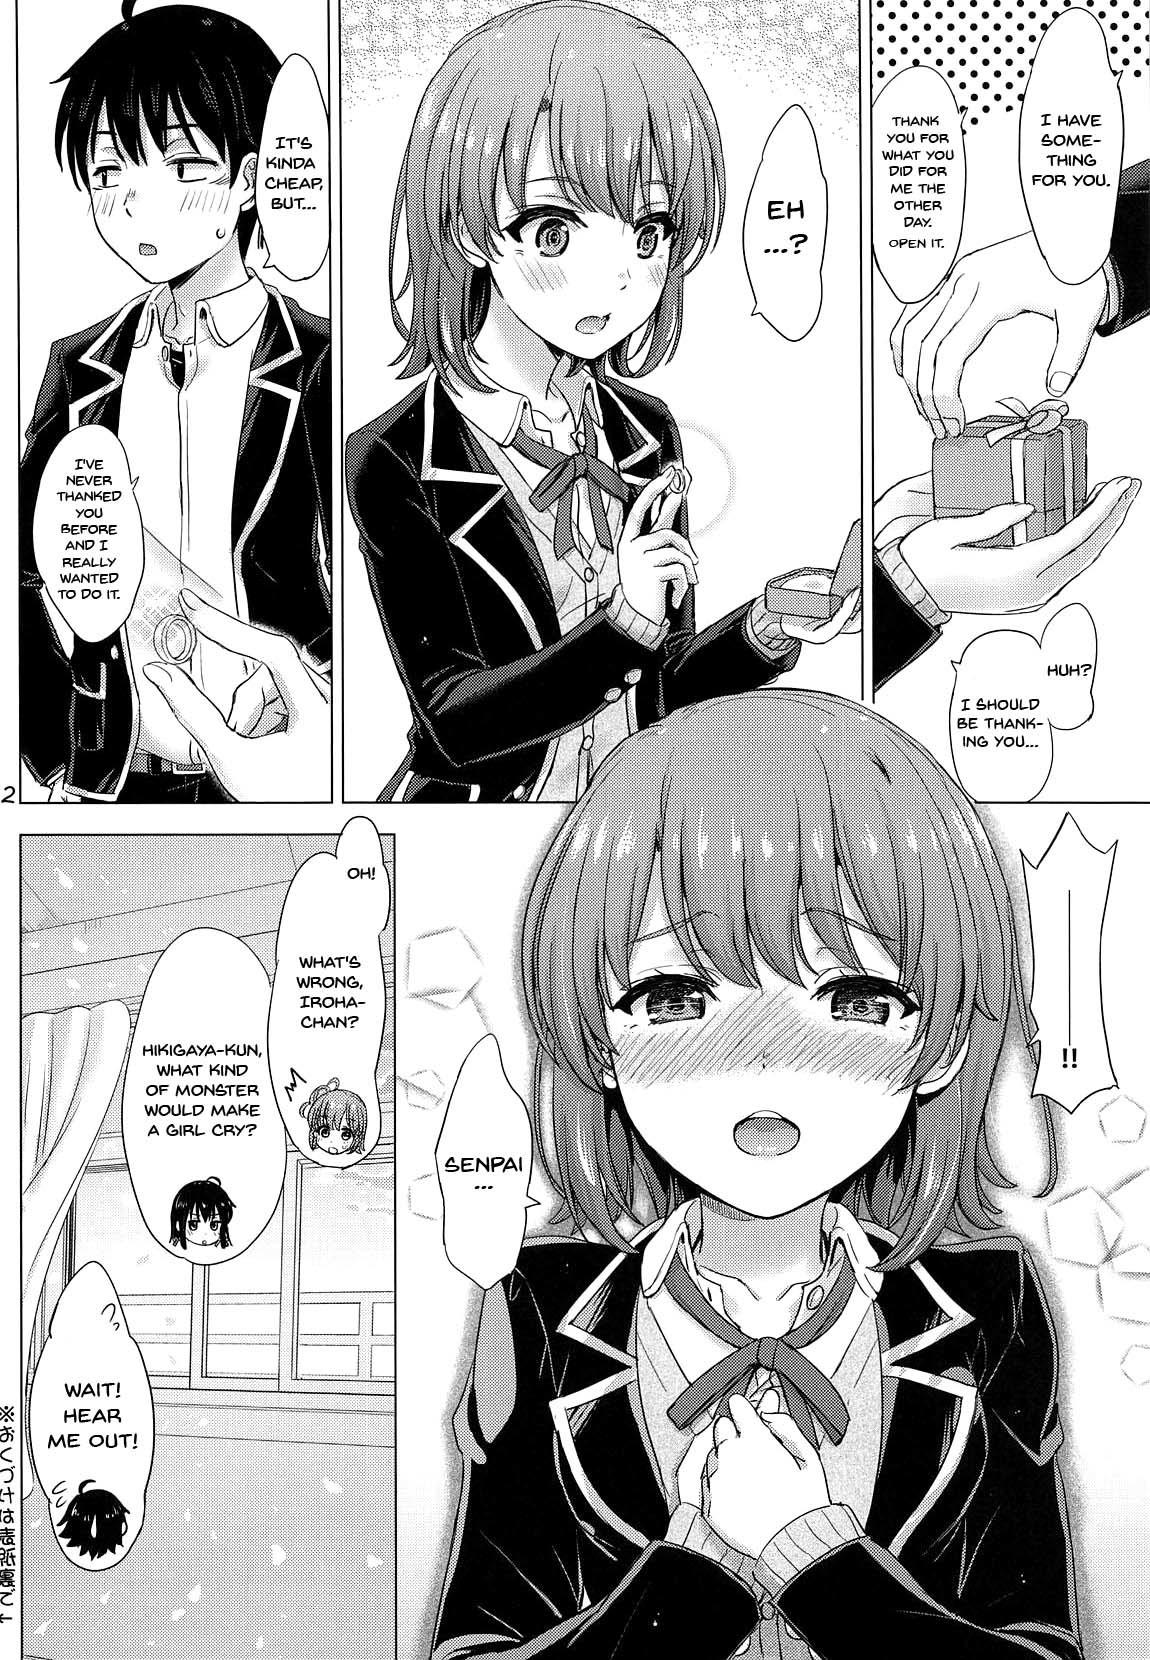 Tetona Wedding Irohasu! - Iroha's gonna marry you after today's scholl! - Yahari ore no seishun love come wa machigatteiru Hidden Camera - Page 21